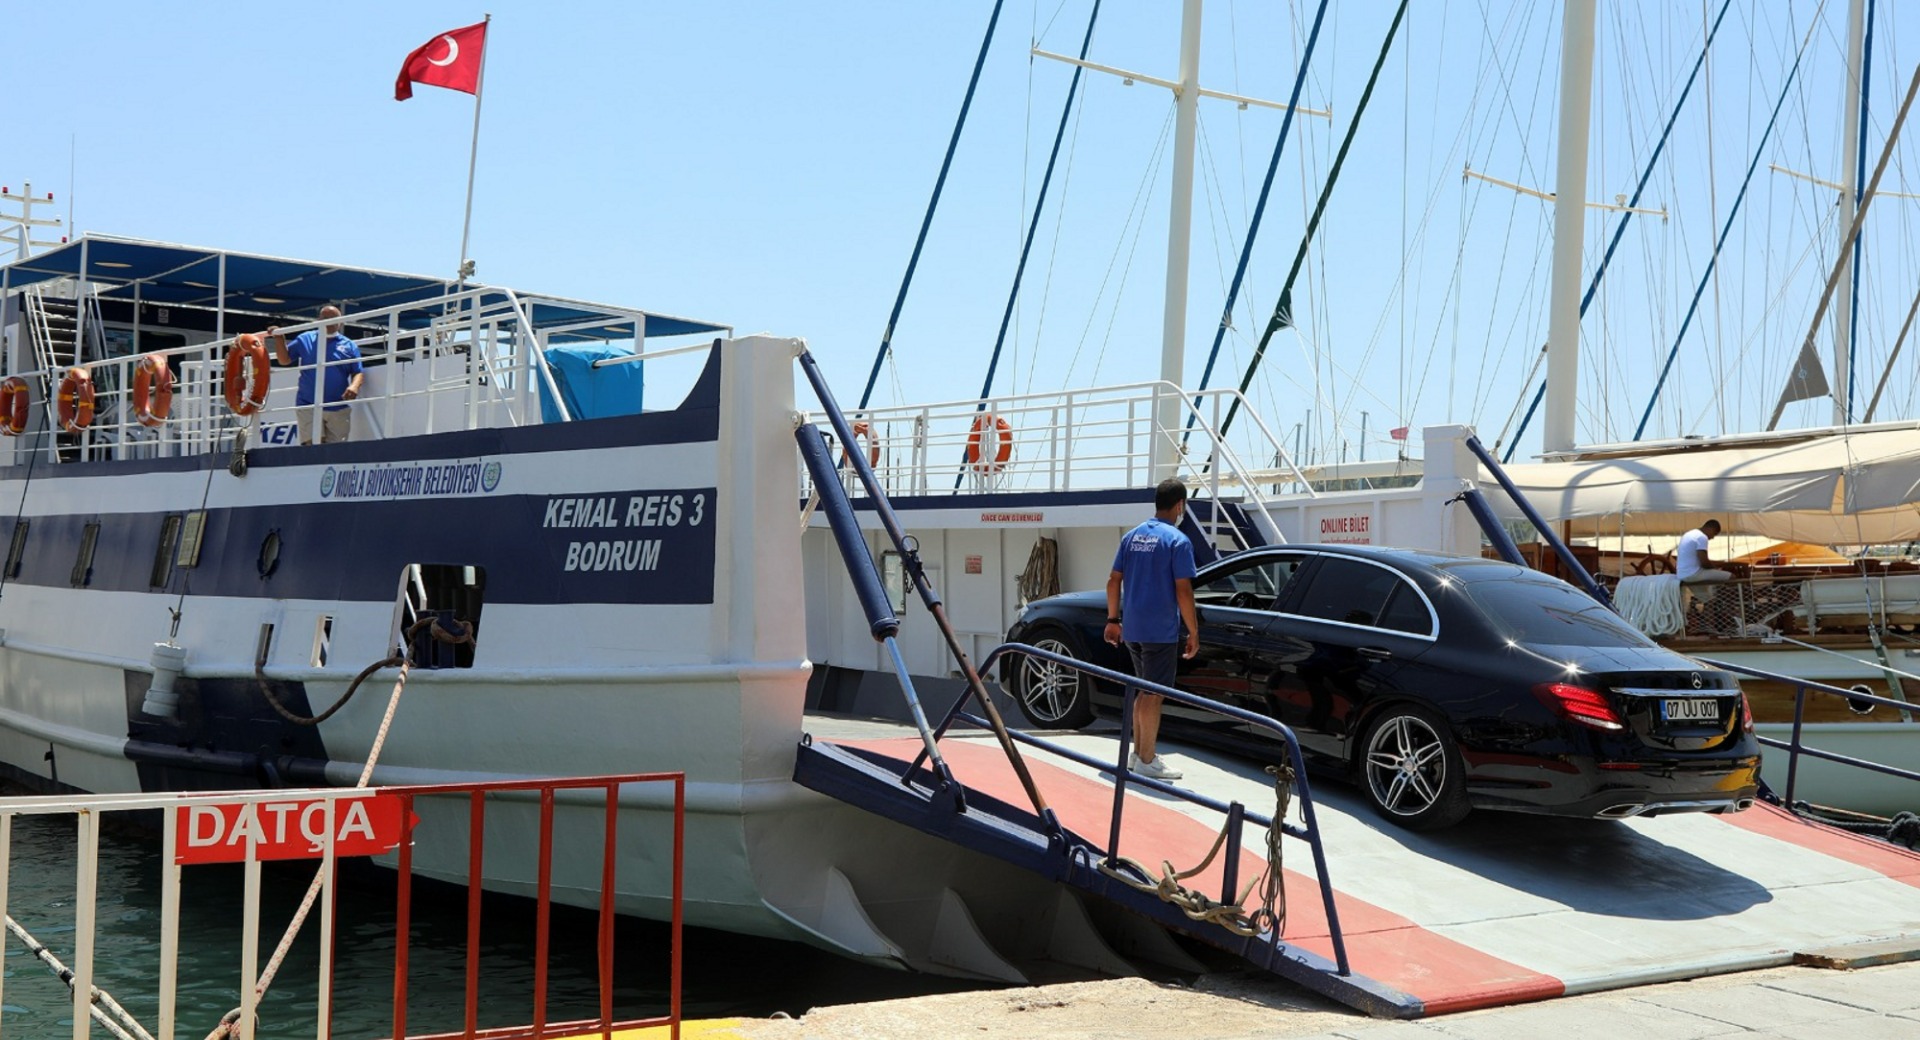 Bodrum - Datça arasında feribot ile 611 bin 842 yolcu taşıdı  